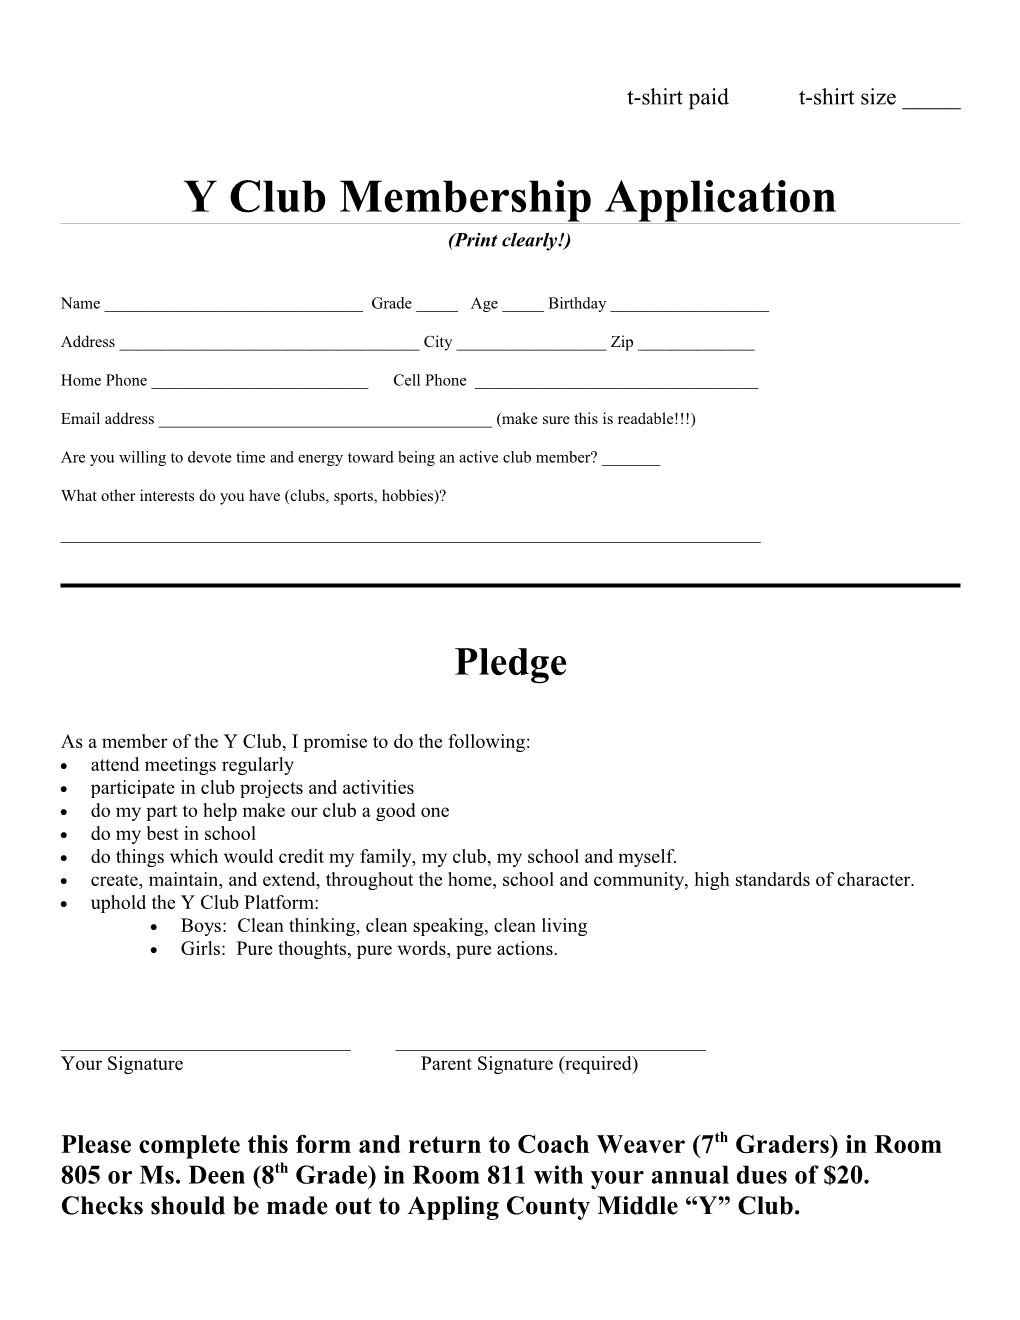 Y Club Membership Application